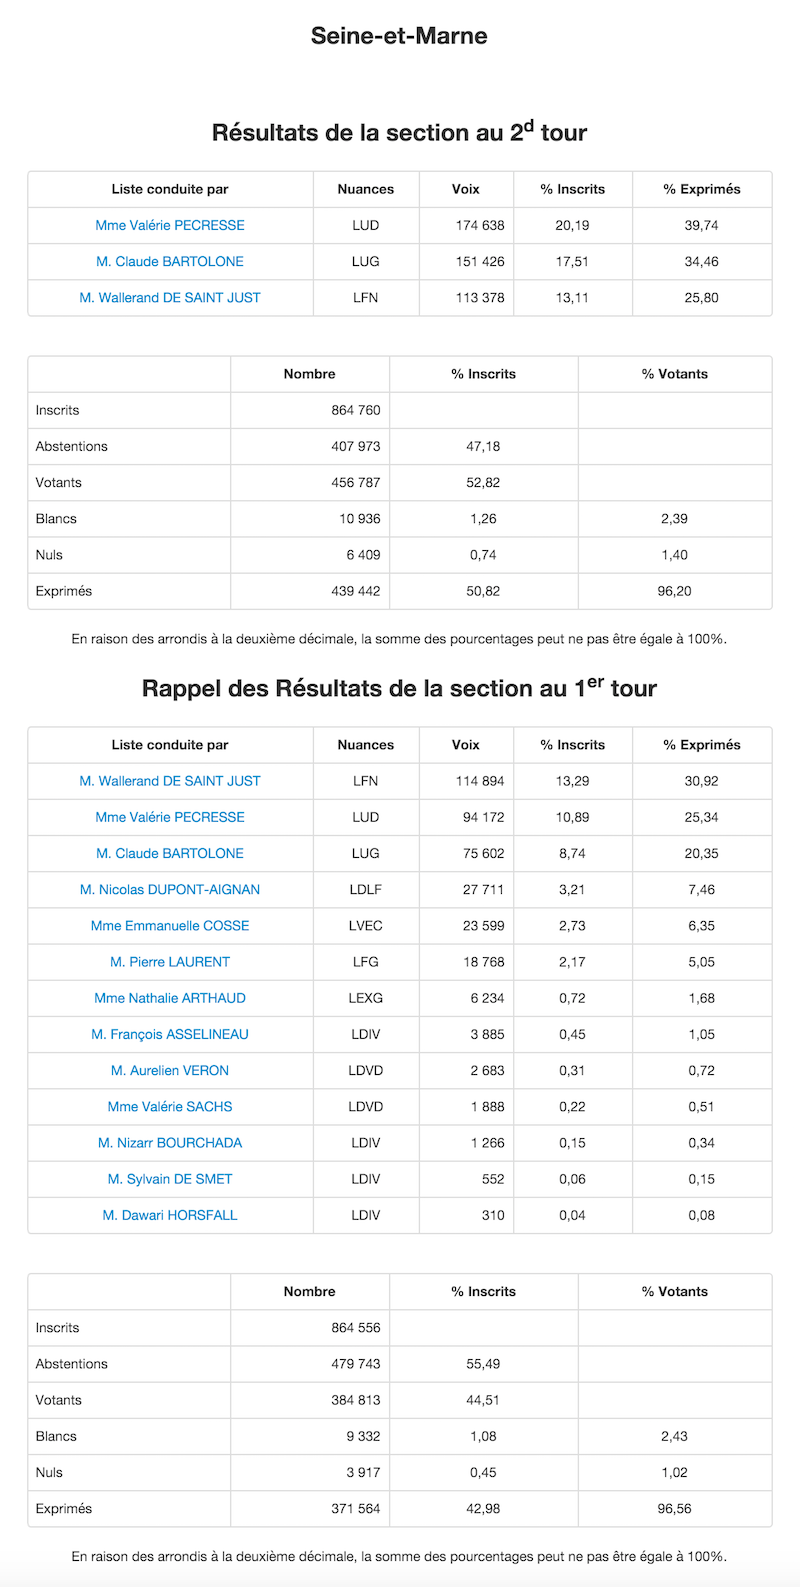 Régionales 2015 - 2nd et 1er tour dans la Seine et Marne © Ministère de l'Intérieur